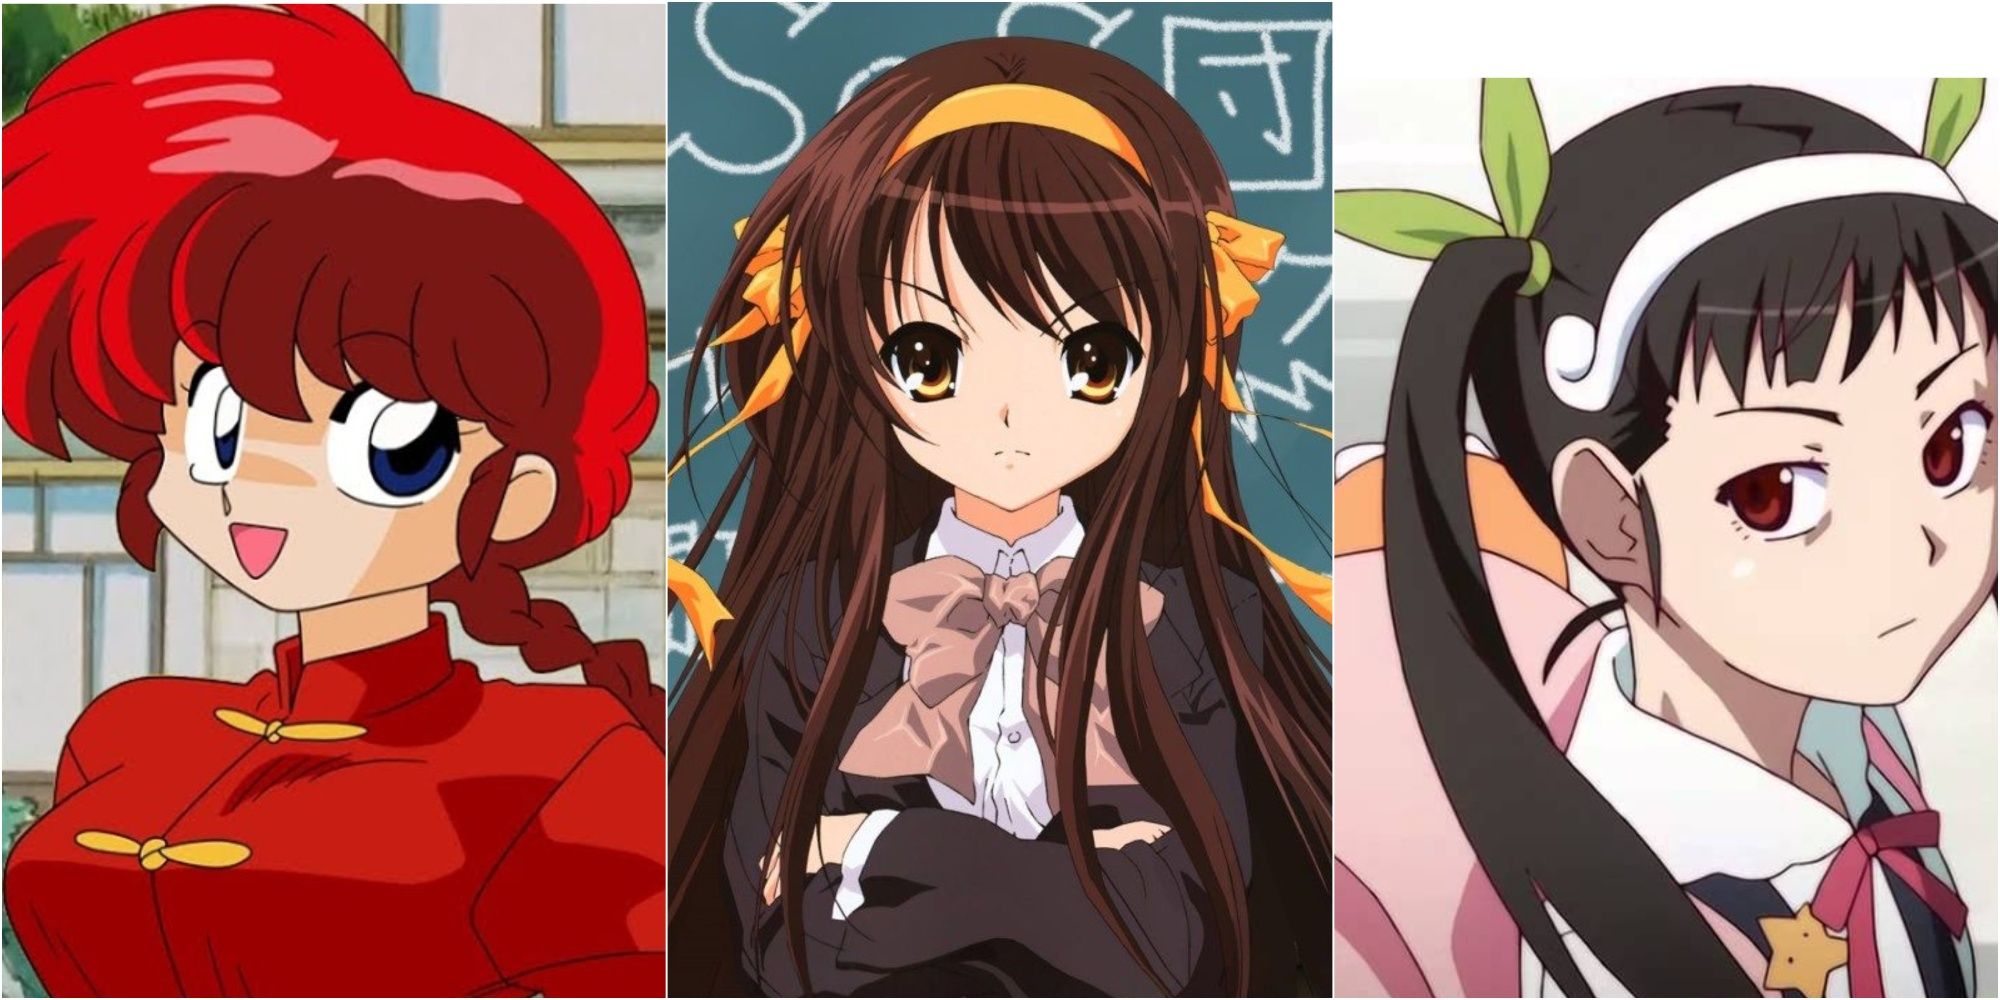 A featured of Ranma Saotome (Ranma ½), Haruhi Suzumiya (The Melancholy of Haruhi Suzumiya), and Mayoi Hachikuji (Bakemonogatari)